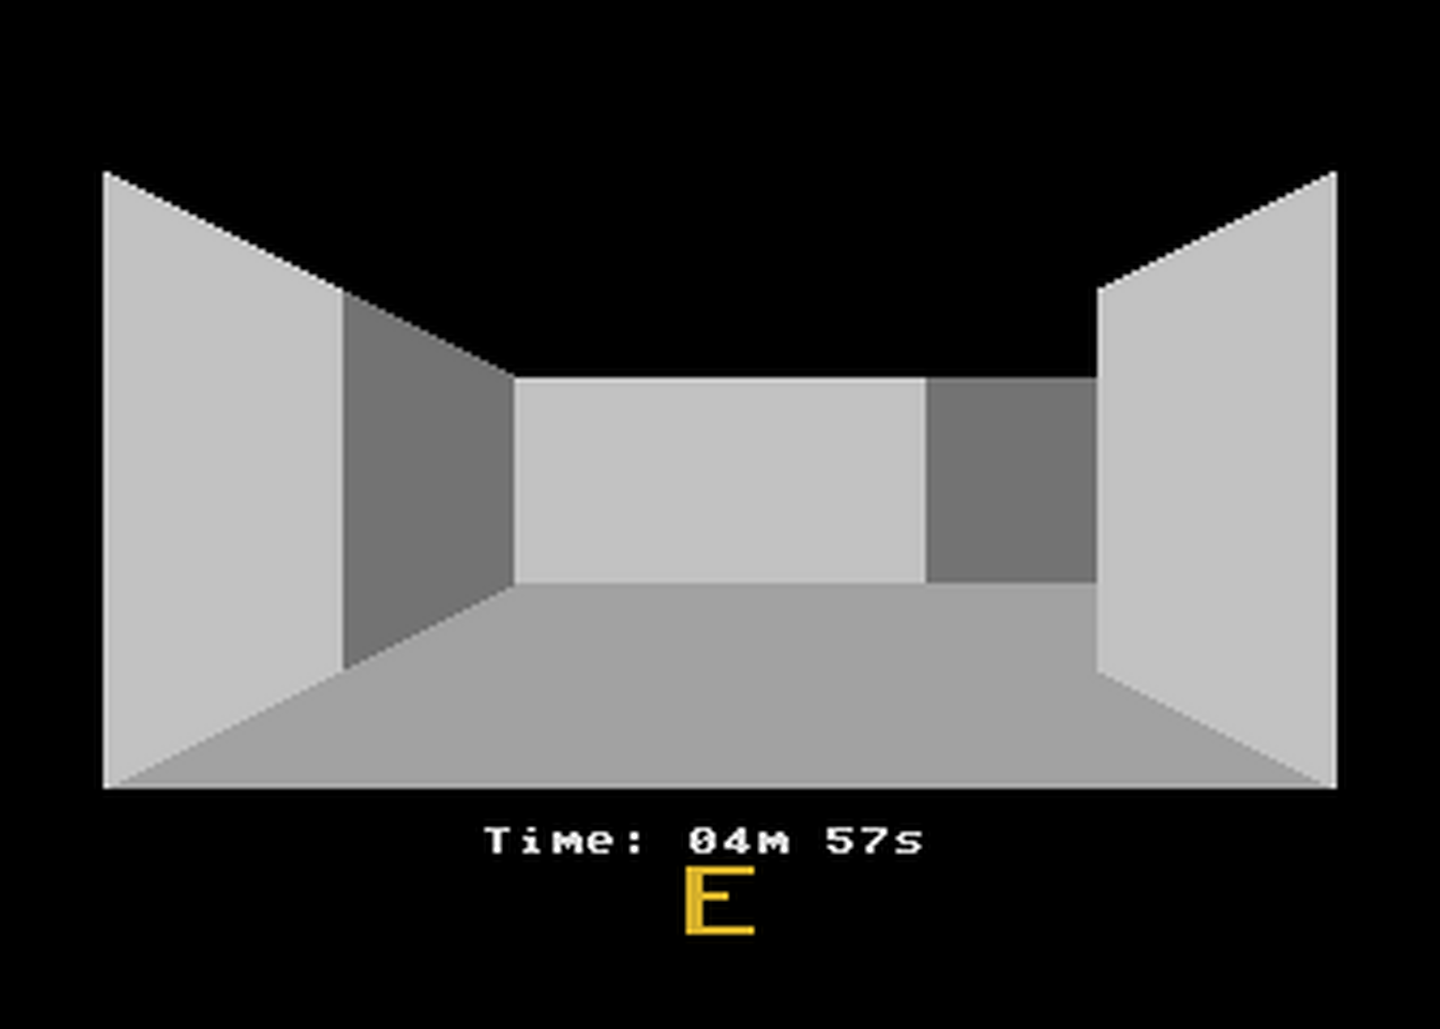 Atari GameBase Amazing_Maze (No_Publisher)